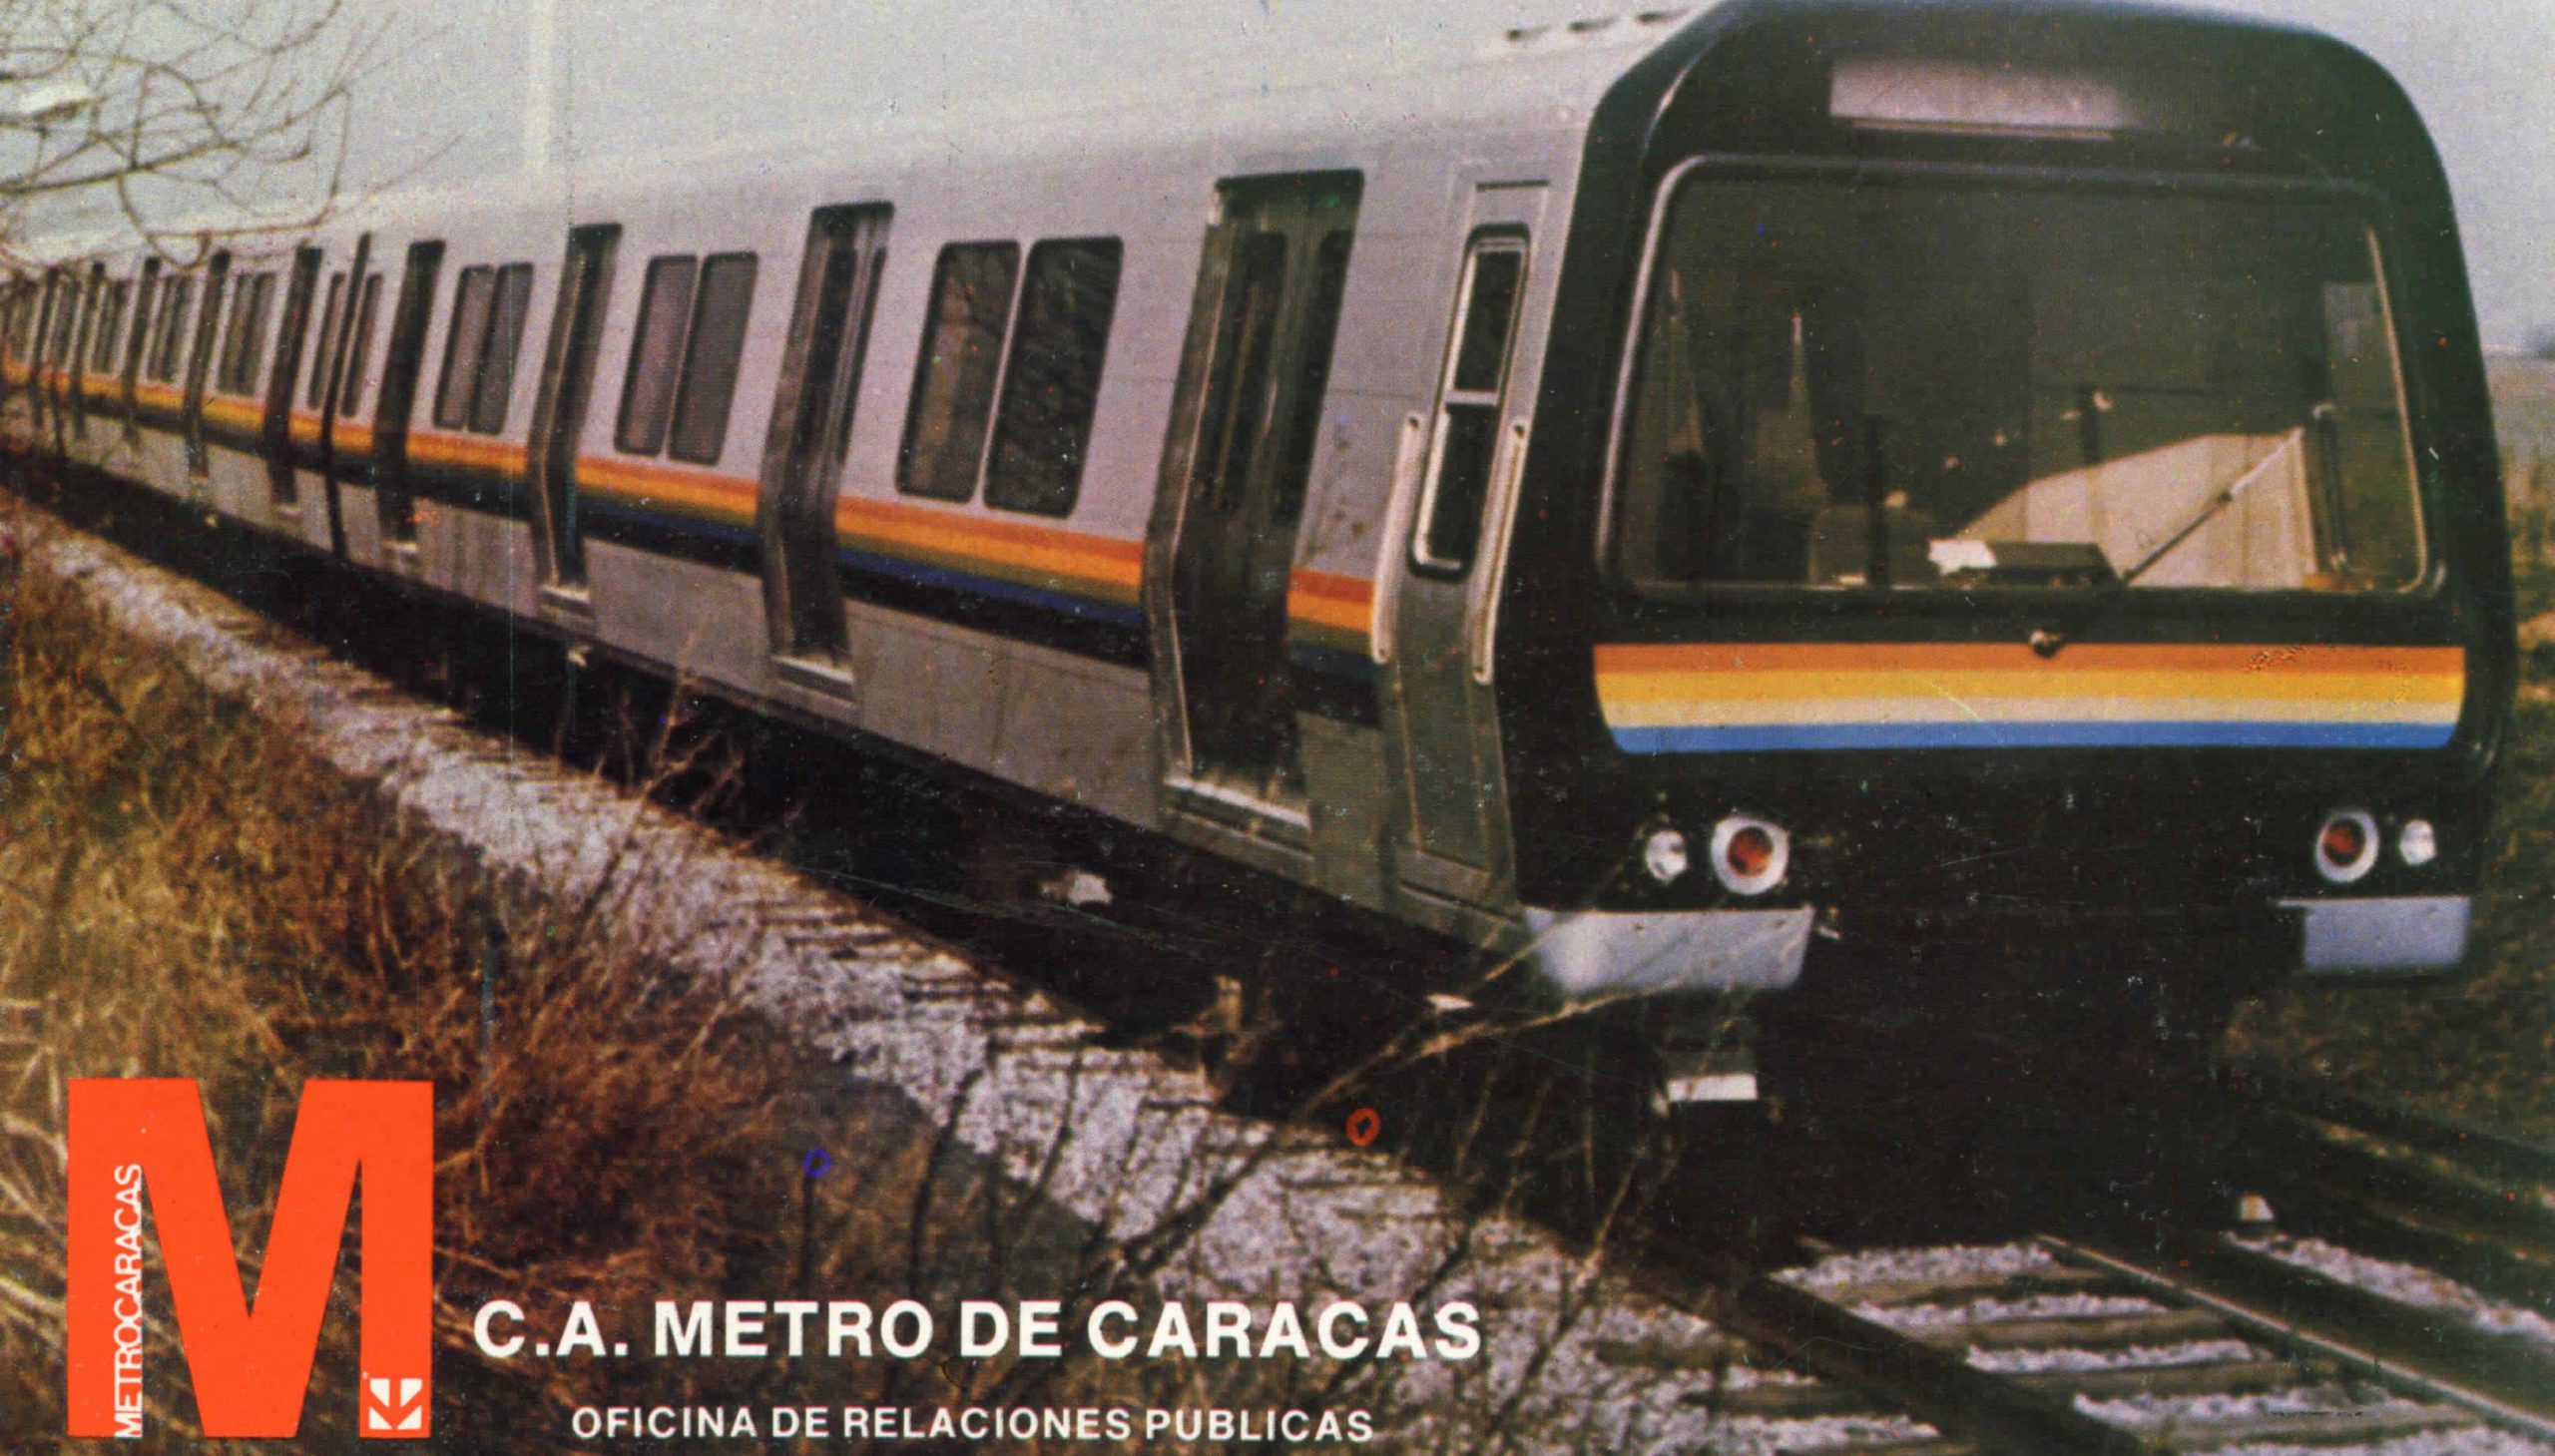 Rame du métro de Caracas, 1983 - Archives historiques BNP Paribas